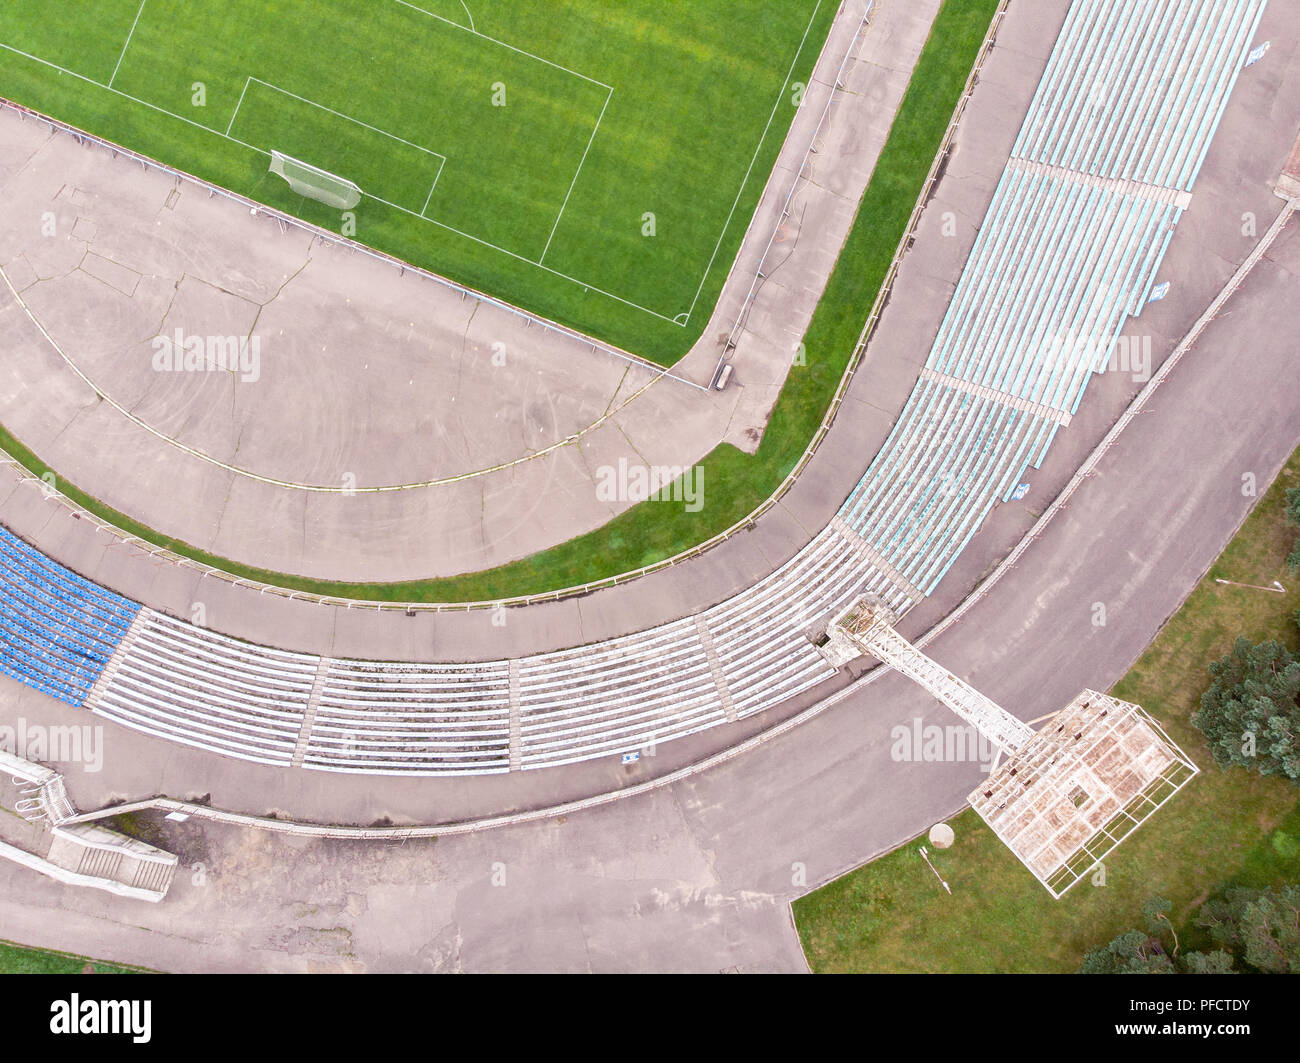 Imagen de drone City estadio con campo de fútbol y asientos. Vista aérea desde arriba Foto de stock